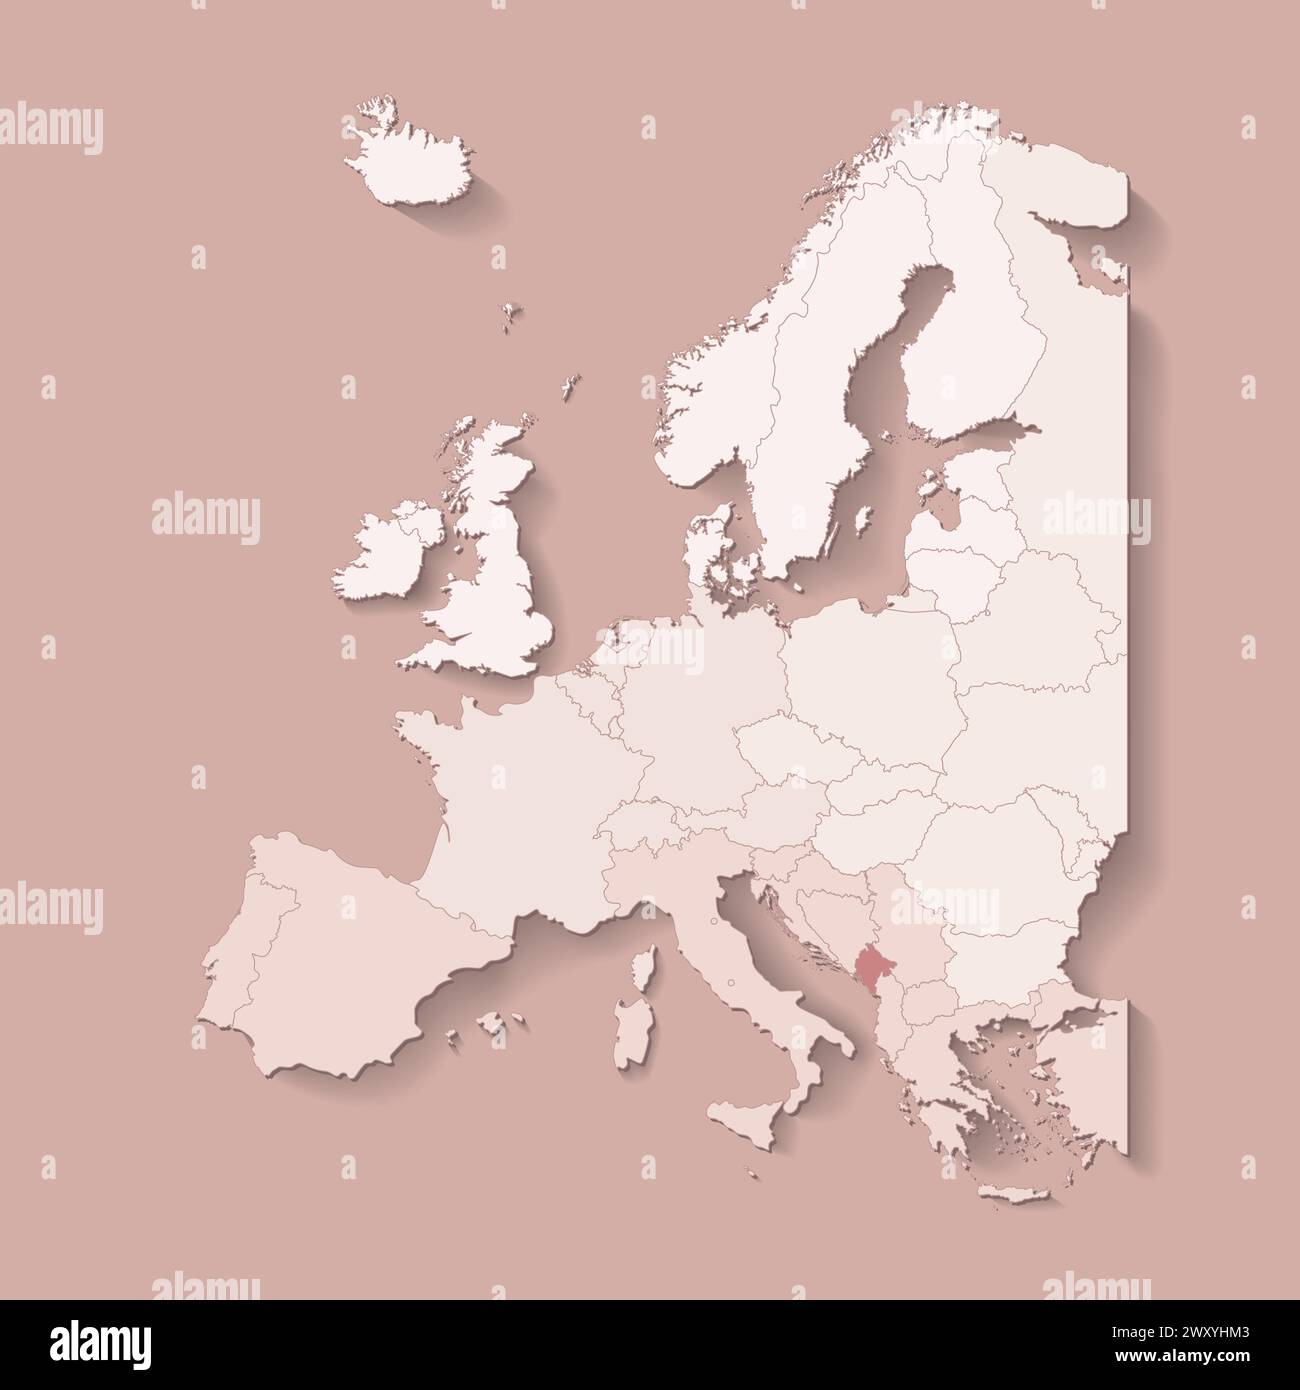 Illustrazione vettoriale con terra europea con confini di stati e paese contrassegnato Montenegro. Mappa politica di colore marrone con occidentale, meridionale e così via Illustrazione Vettoriale